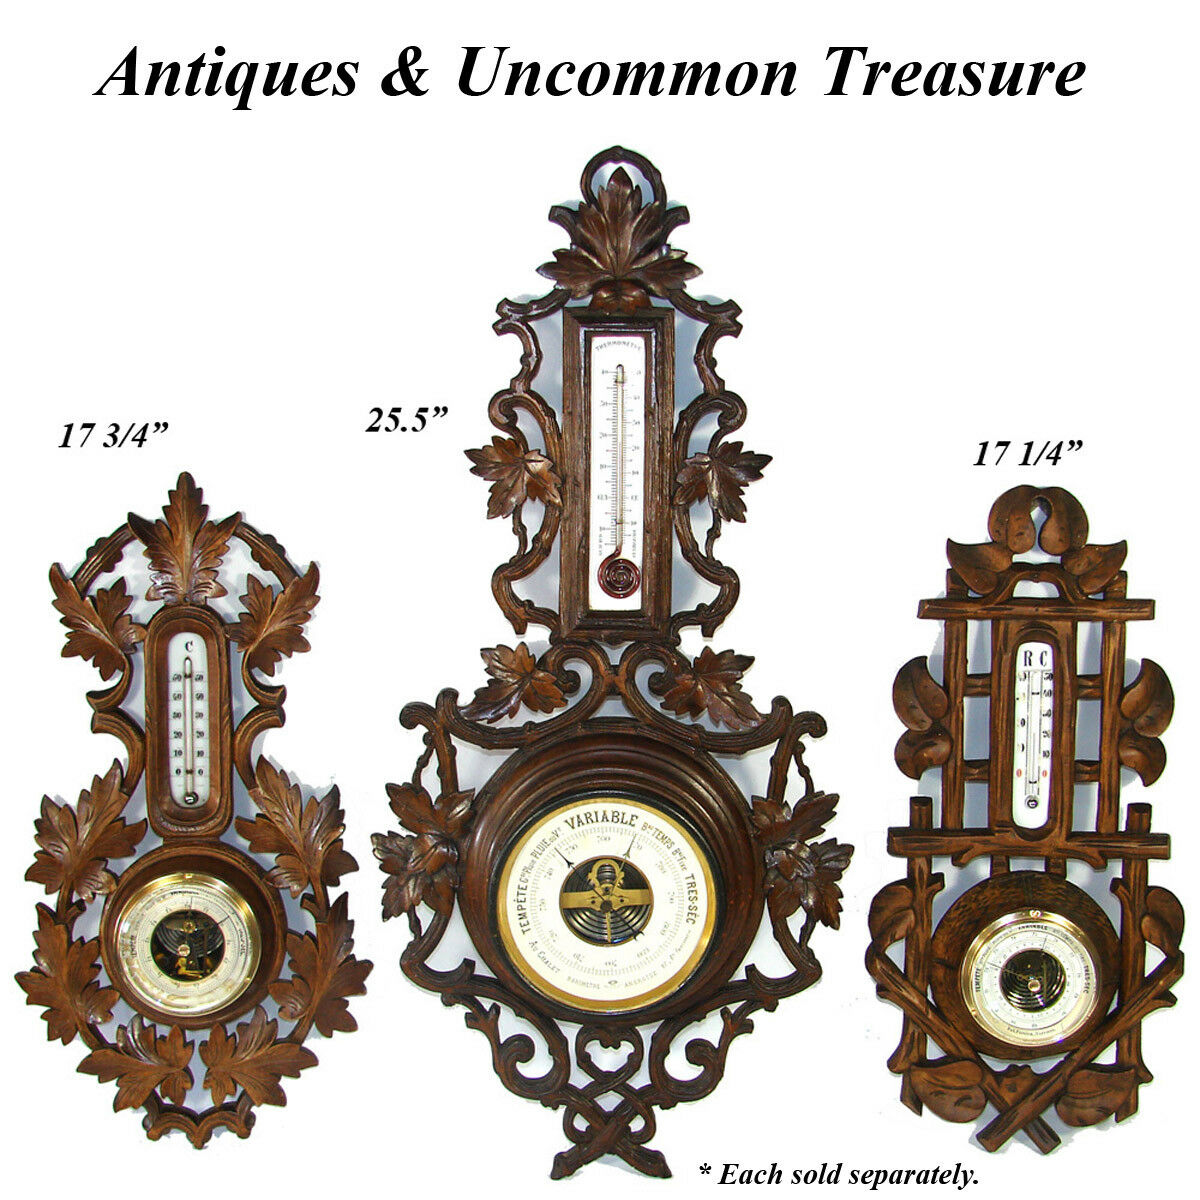 https://antiques-uncommon-treasure.com/cdn/shop/products/32_ae5cca4a-88a1-48d1-95fd-b871b113b5b8.jpg?v=1580866091